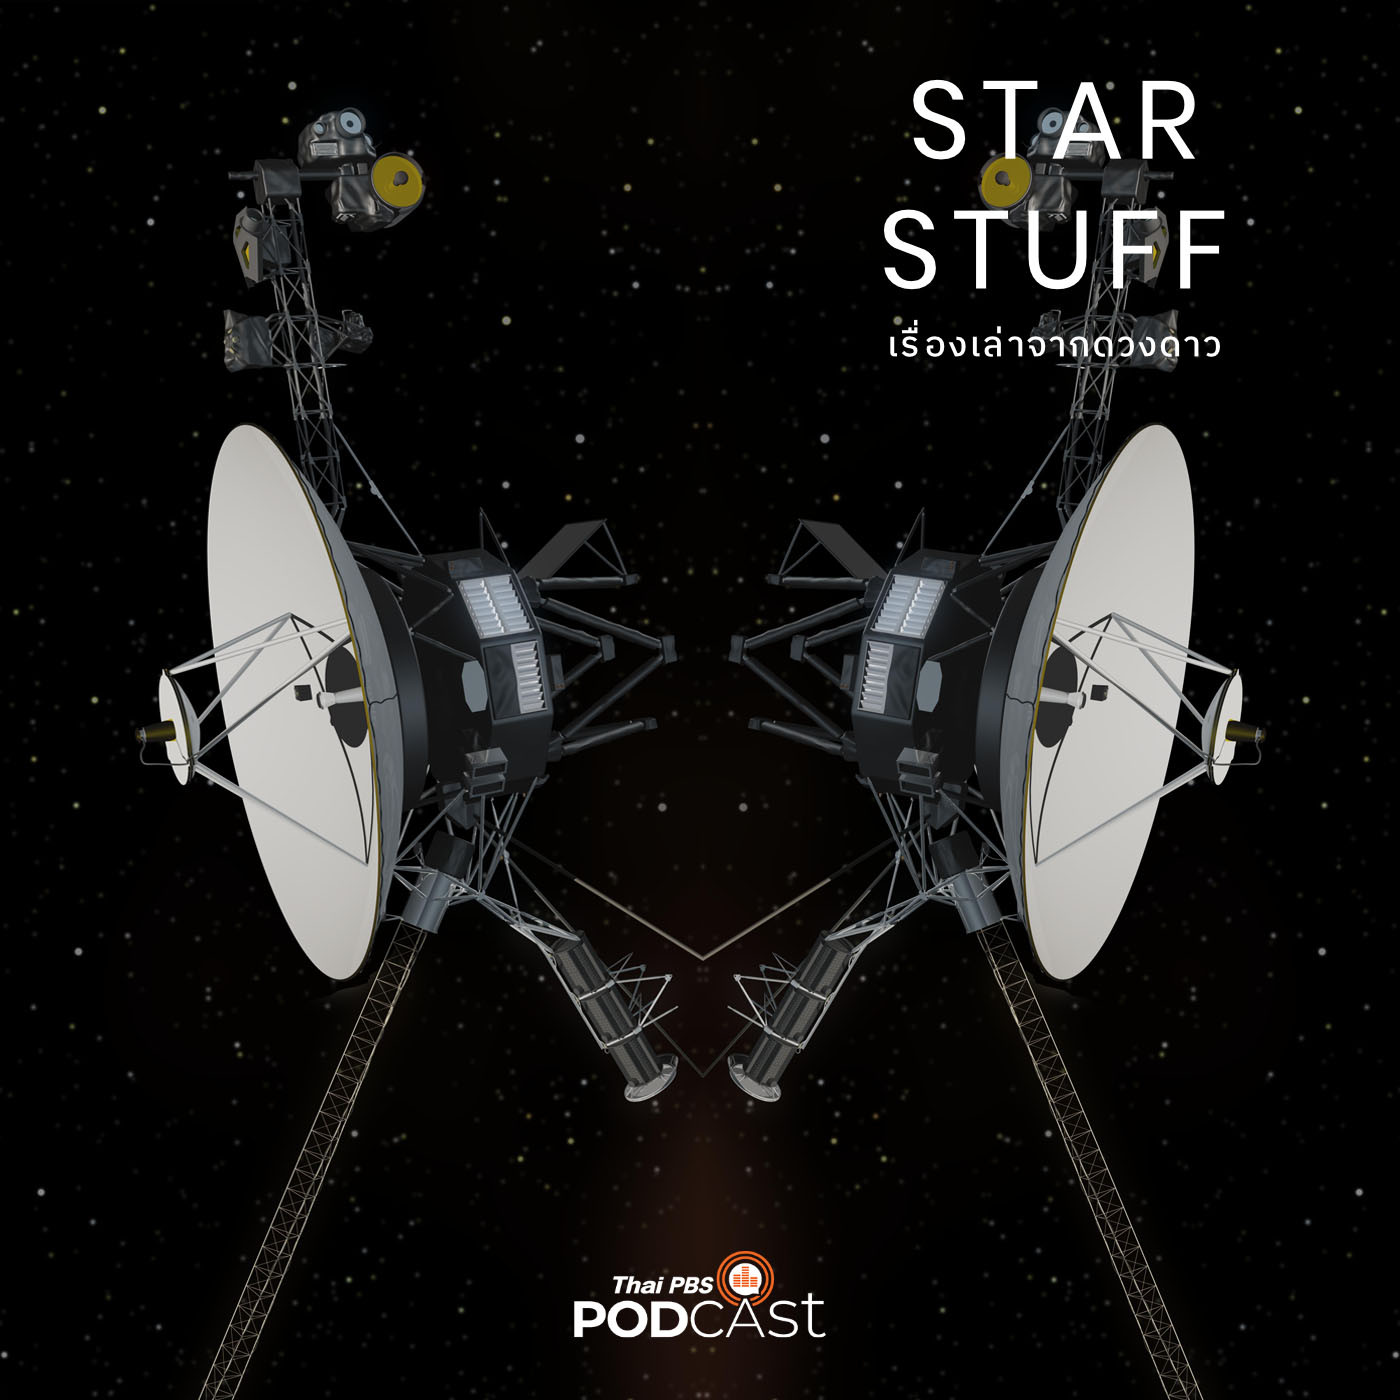 Starstuff เรื่องเล่าจากดวงดาว EP. 5: วอยเอเจอร์ (Voyager) กับการค้นพบเหนือจินตนาการ